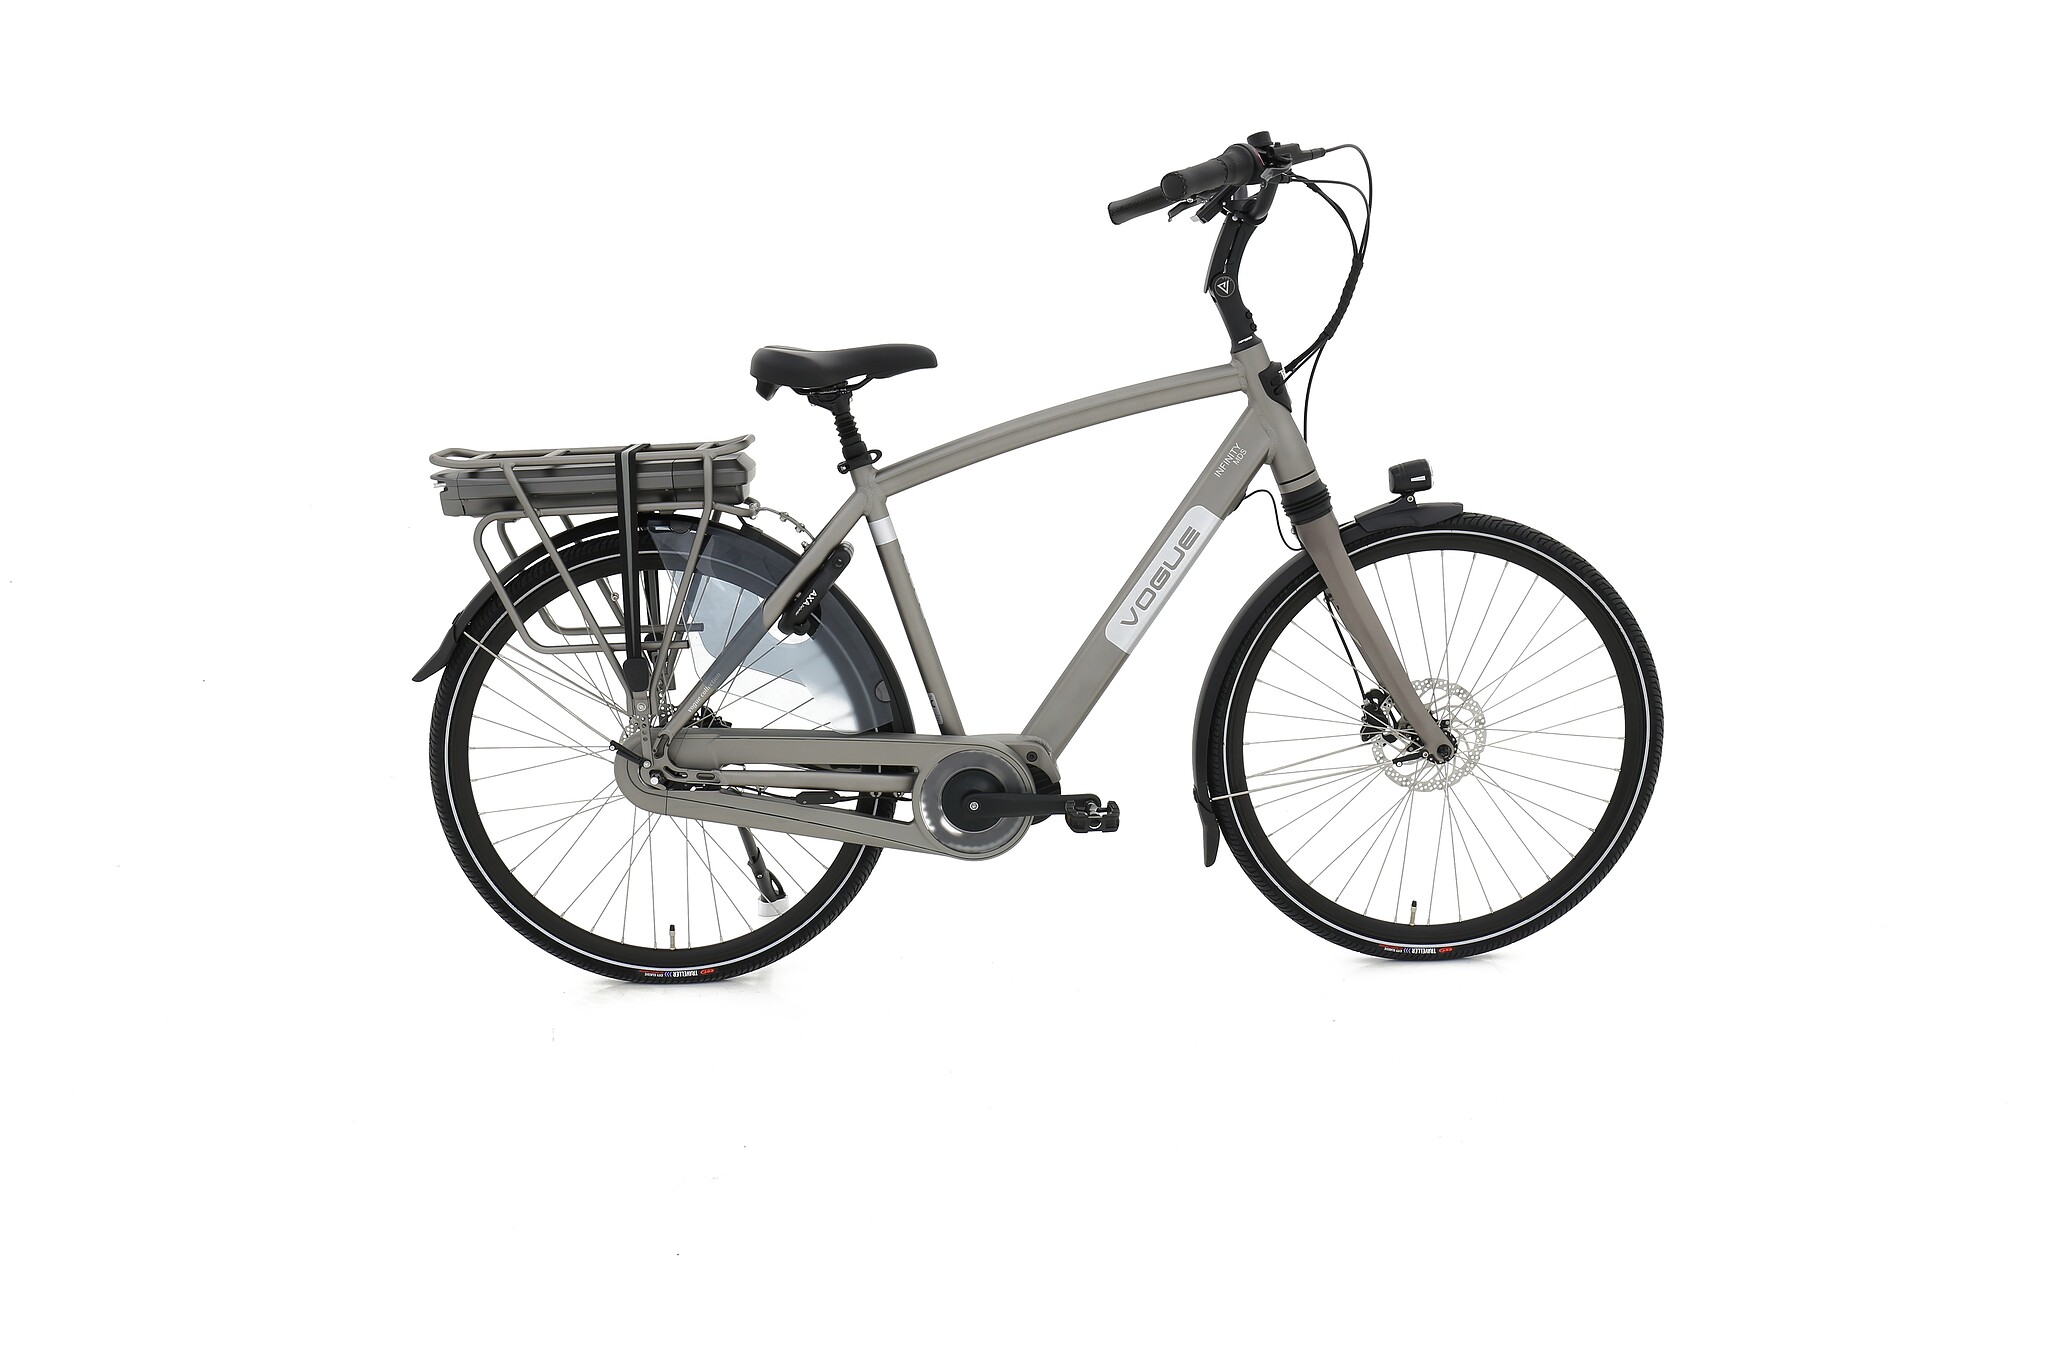 Vogue Elektrische fiets Infinity M300 Heren gray 53cm 468 Watt - Grijs